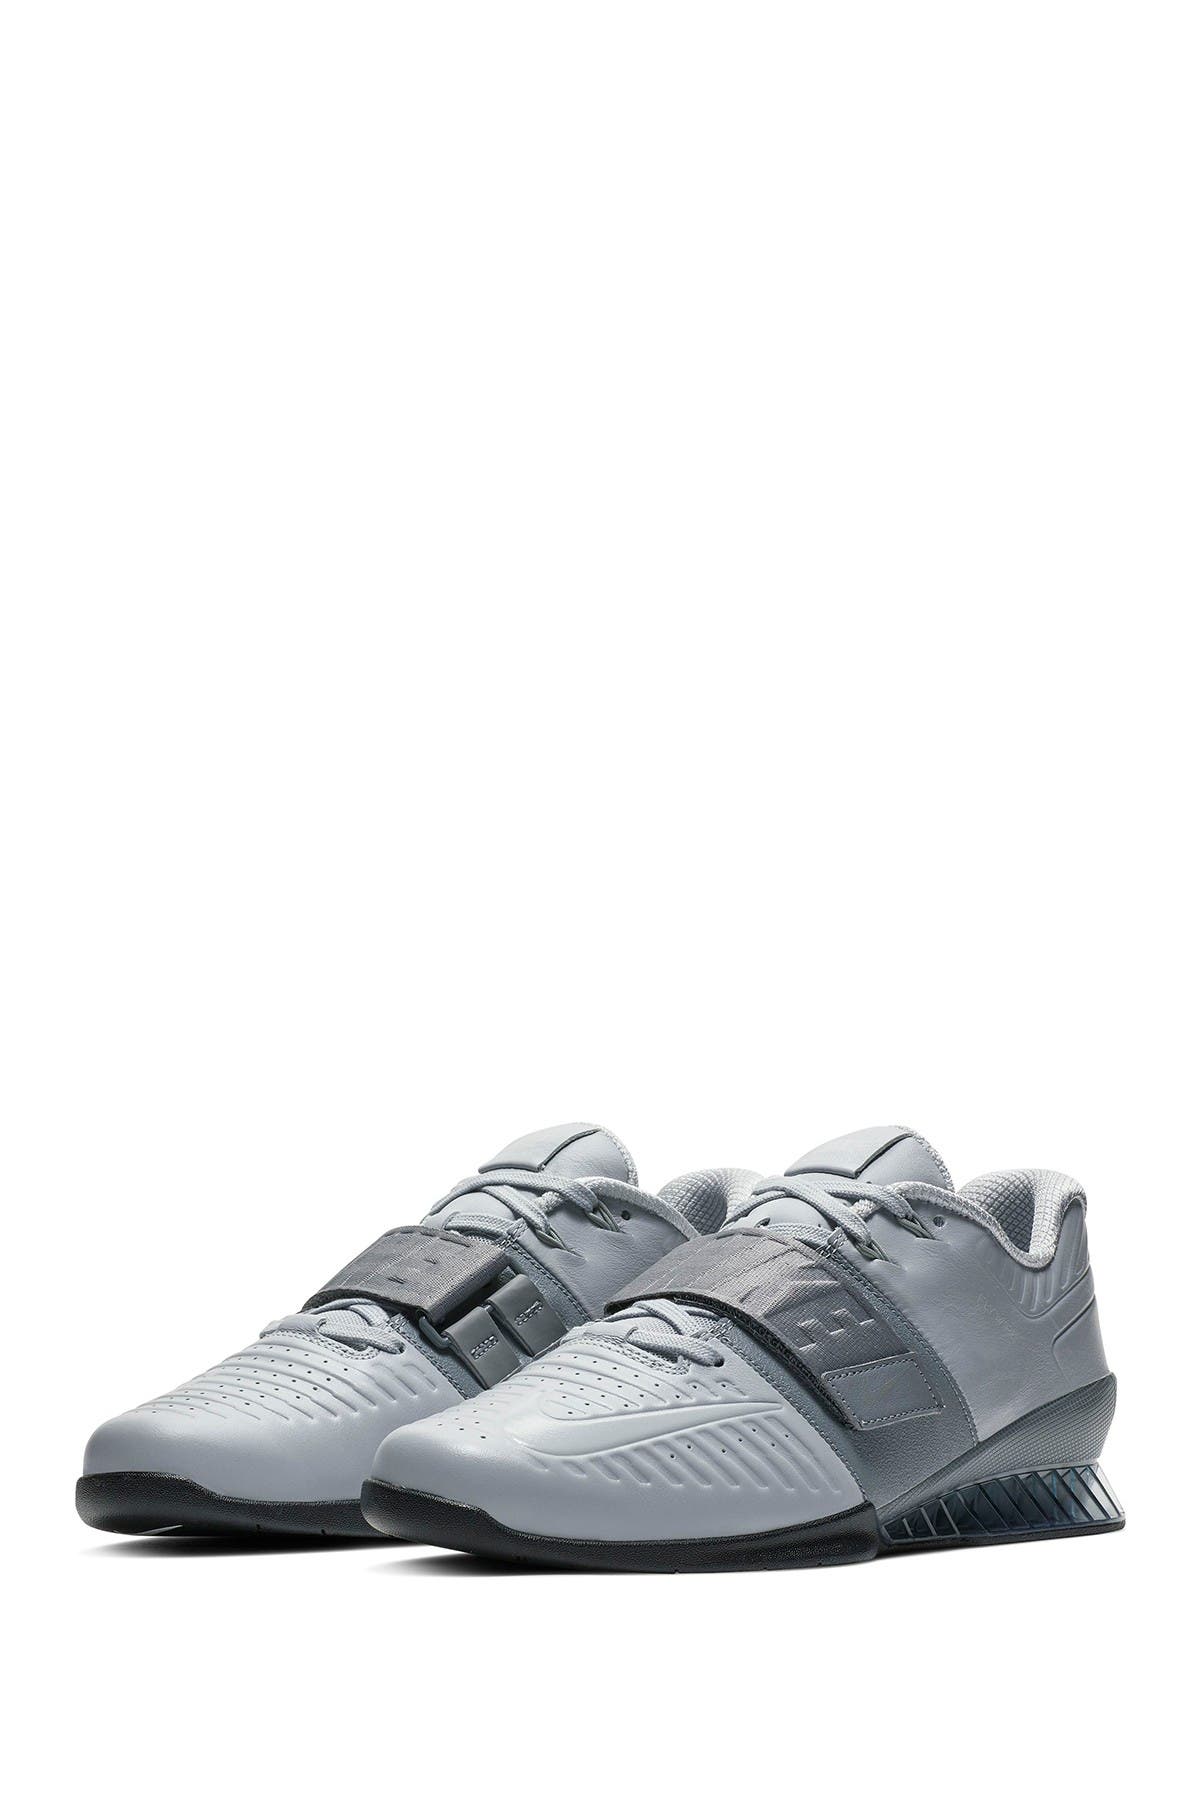 Nike | Romaleos 3 XD Training Shoe 